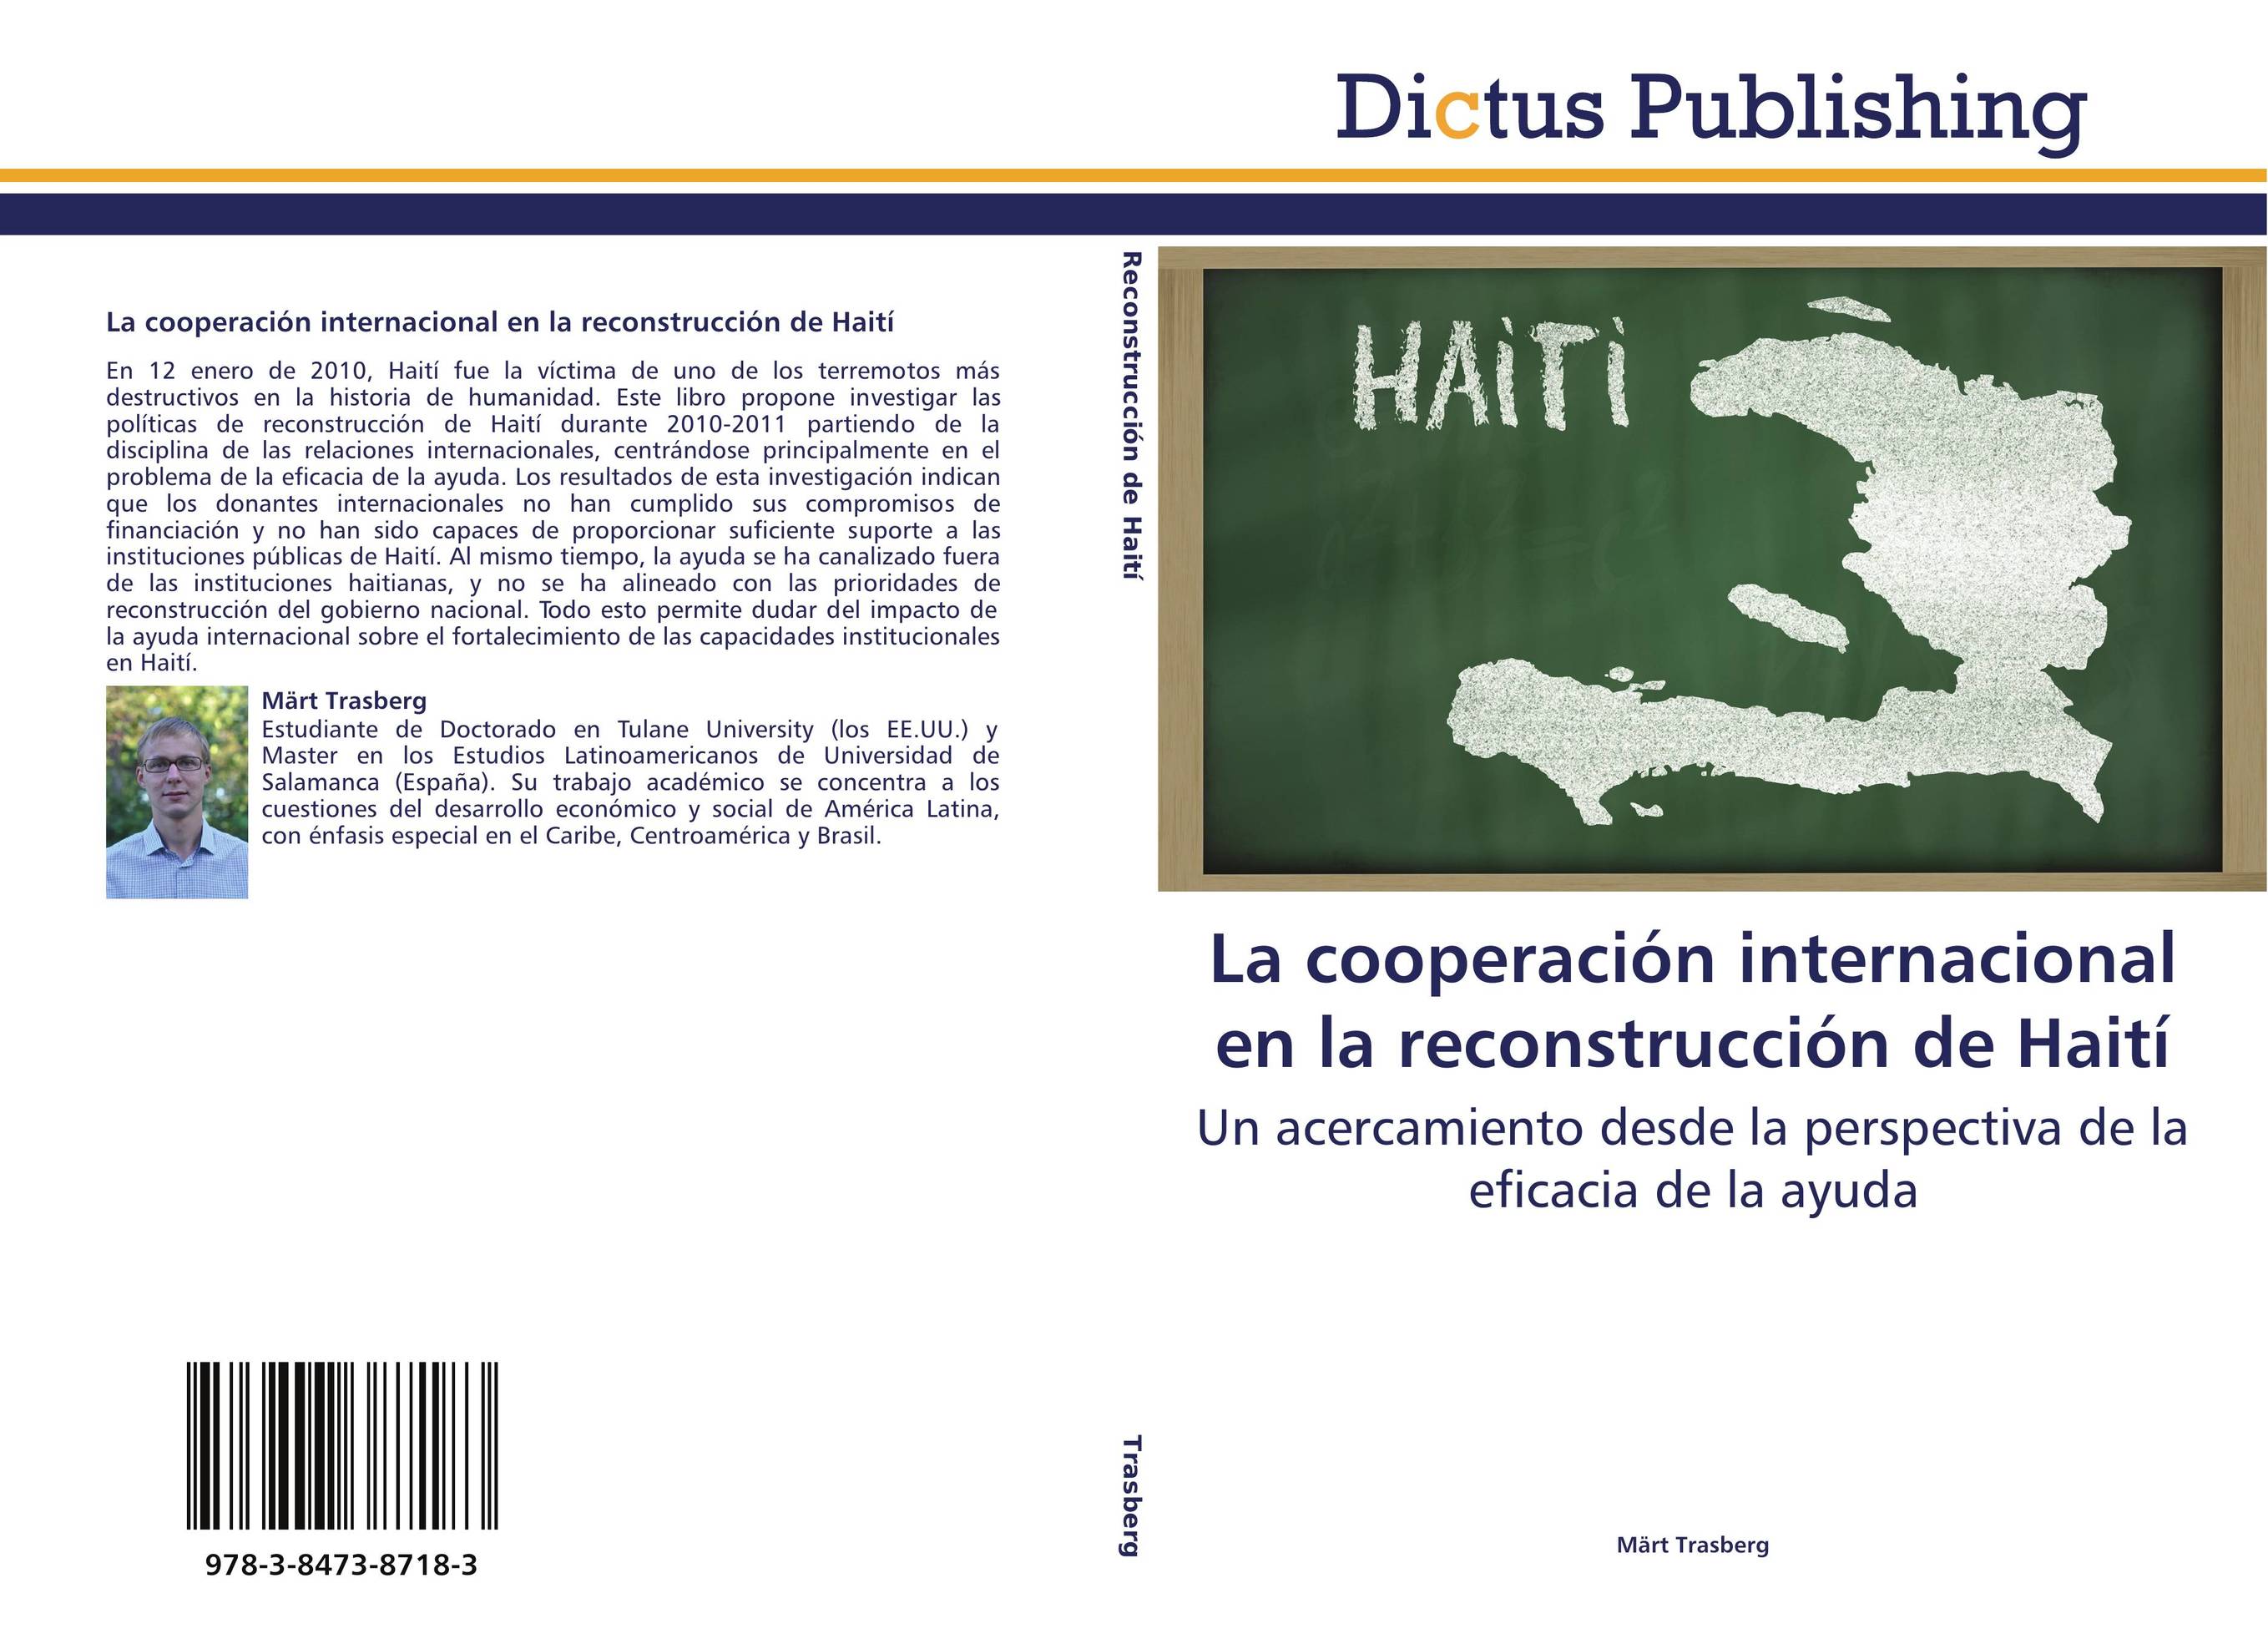 La cooperación internacional en la reconstrucción de Haití